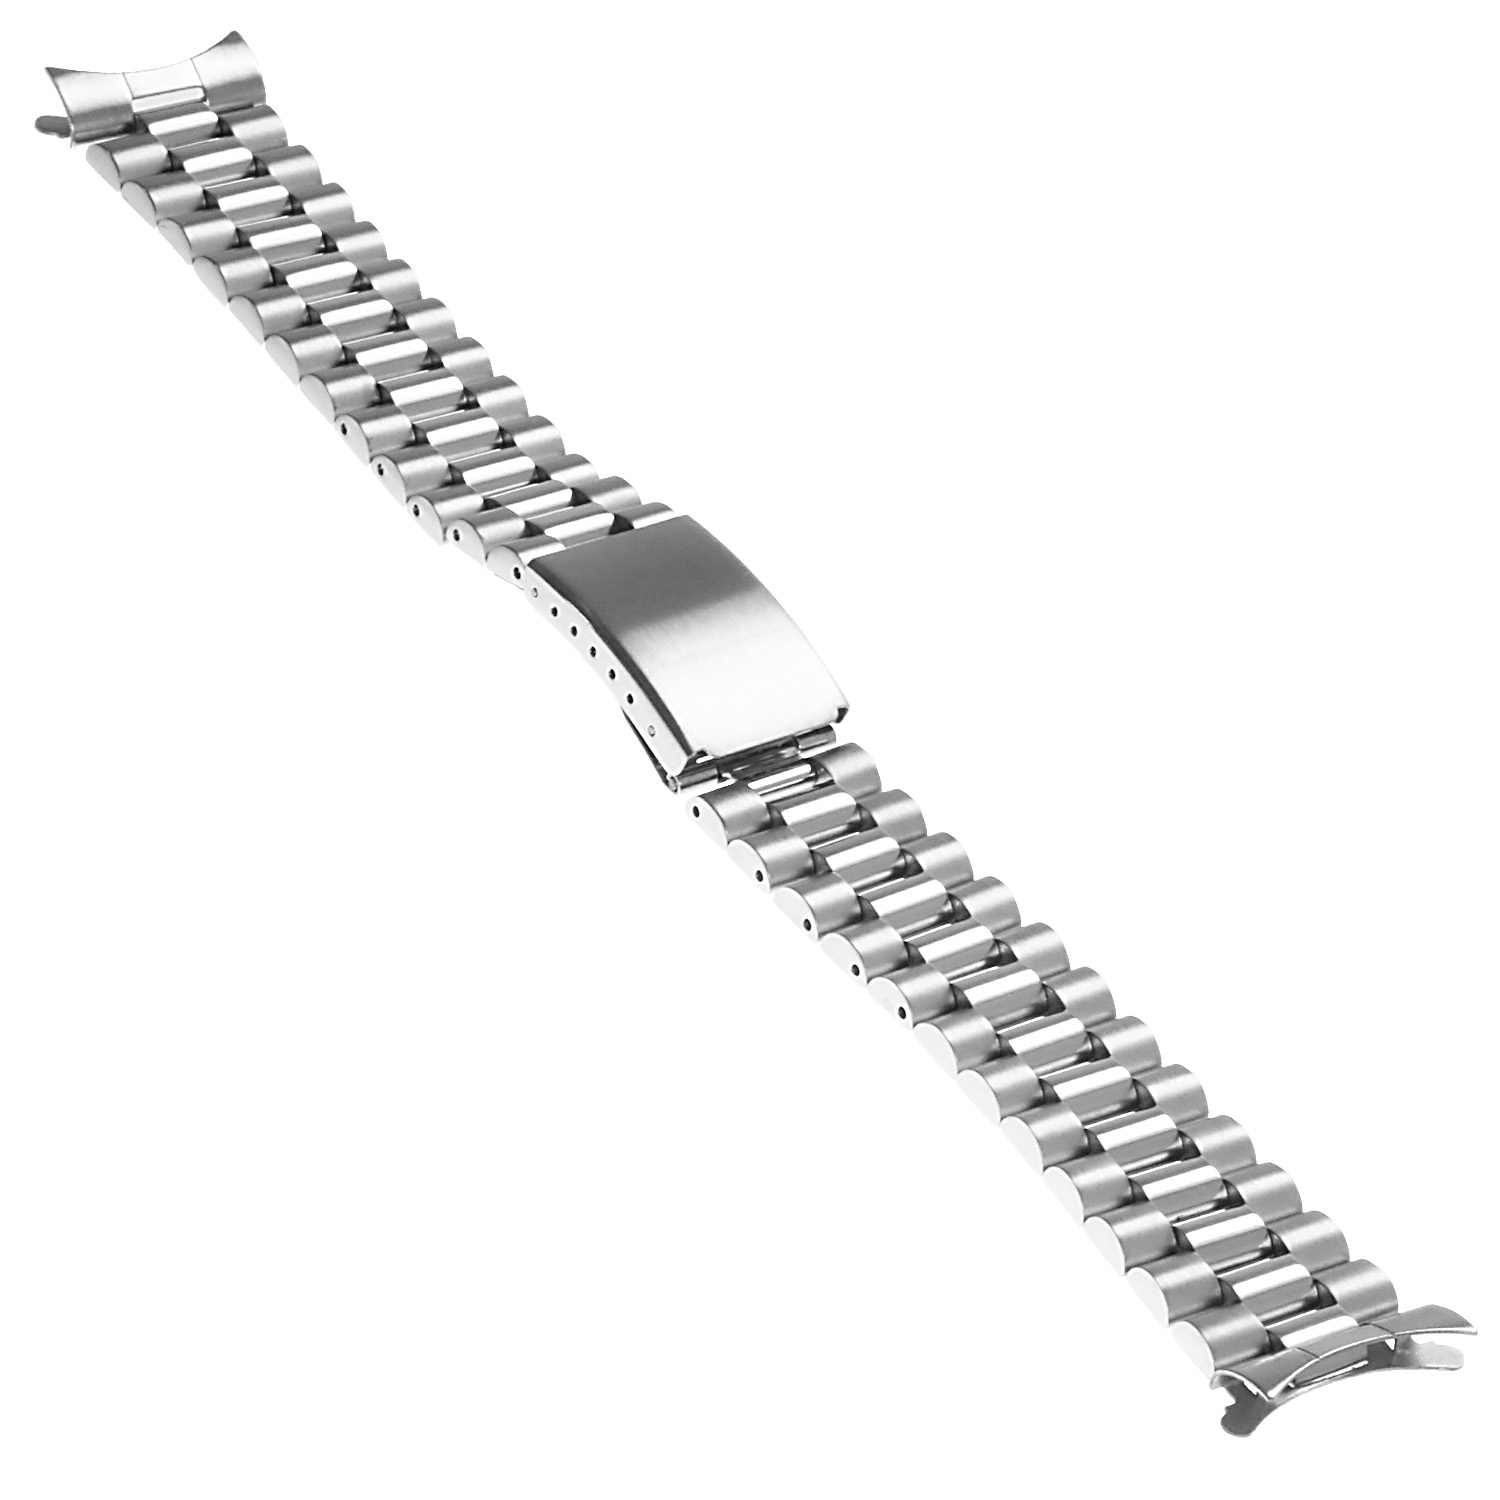 Venio Watch Parts 22mm 316L Jubilee Watch Bracelet